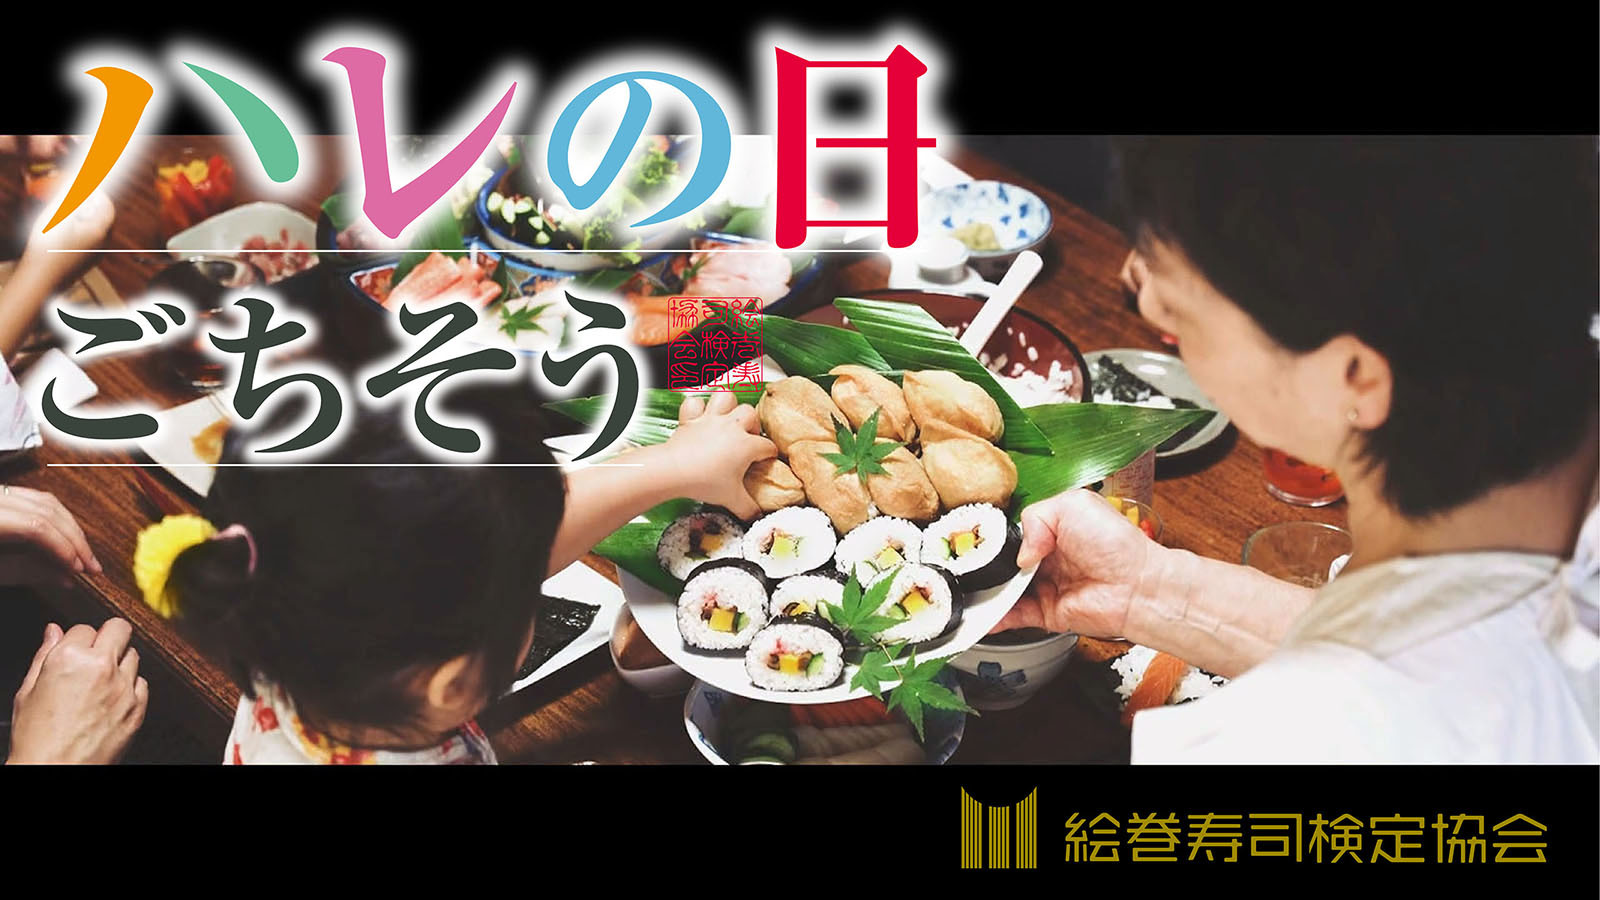 絵巻寿司検定協会がYouTubeチャンネルで
ブランデッドムービーを公開！
【ハレの日のごちそう】食卓にはいつも母の巻き寿司があった